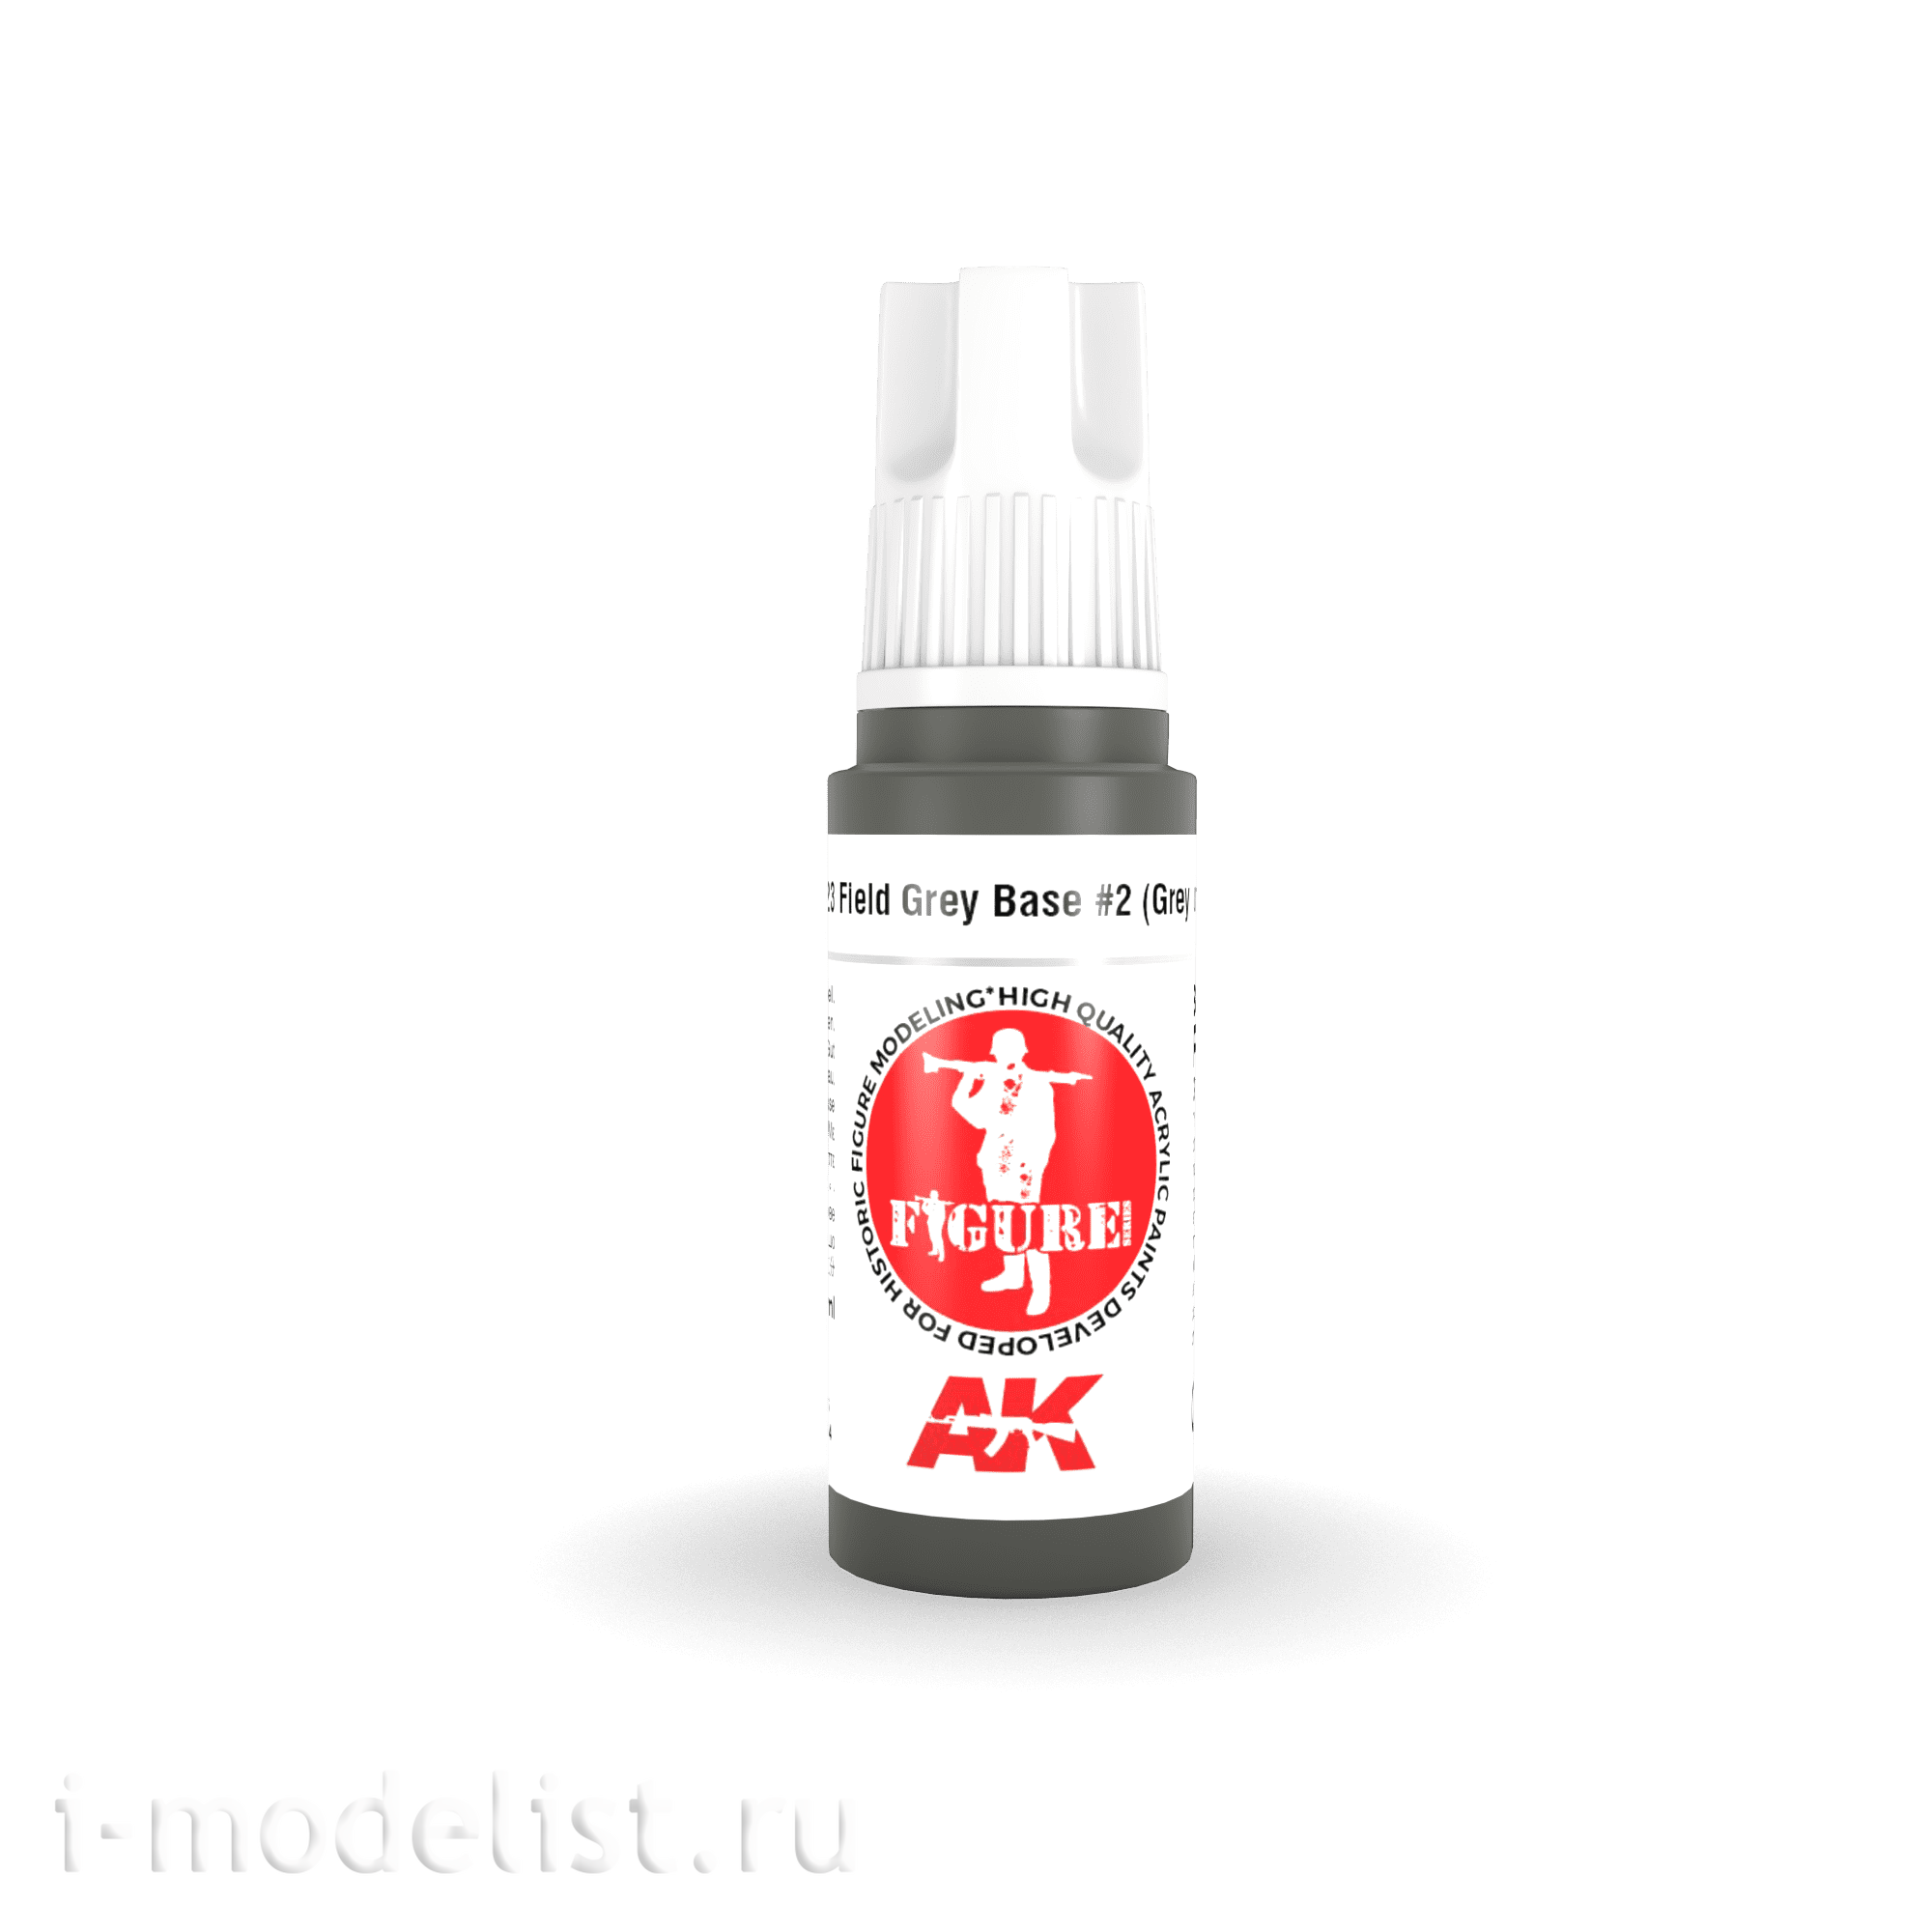 AK11423 AK Interactive Acrylic paint FIELD GREY BASE #2 – GREY UNIFORM) - FIGURES (grey field base #2 (grey uniform)) 17 ml